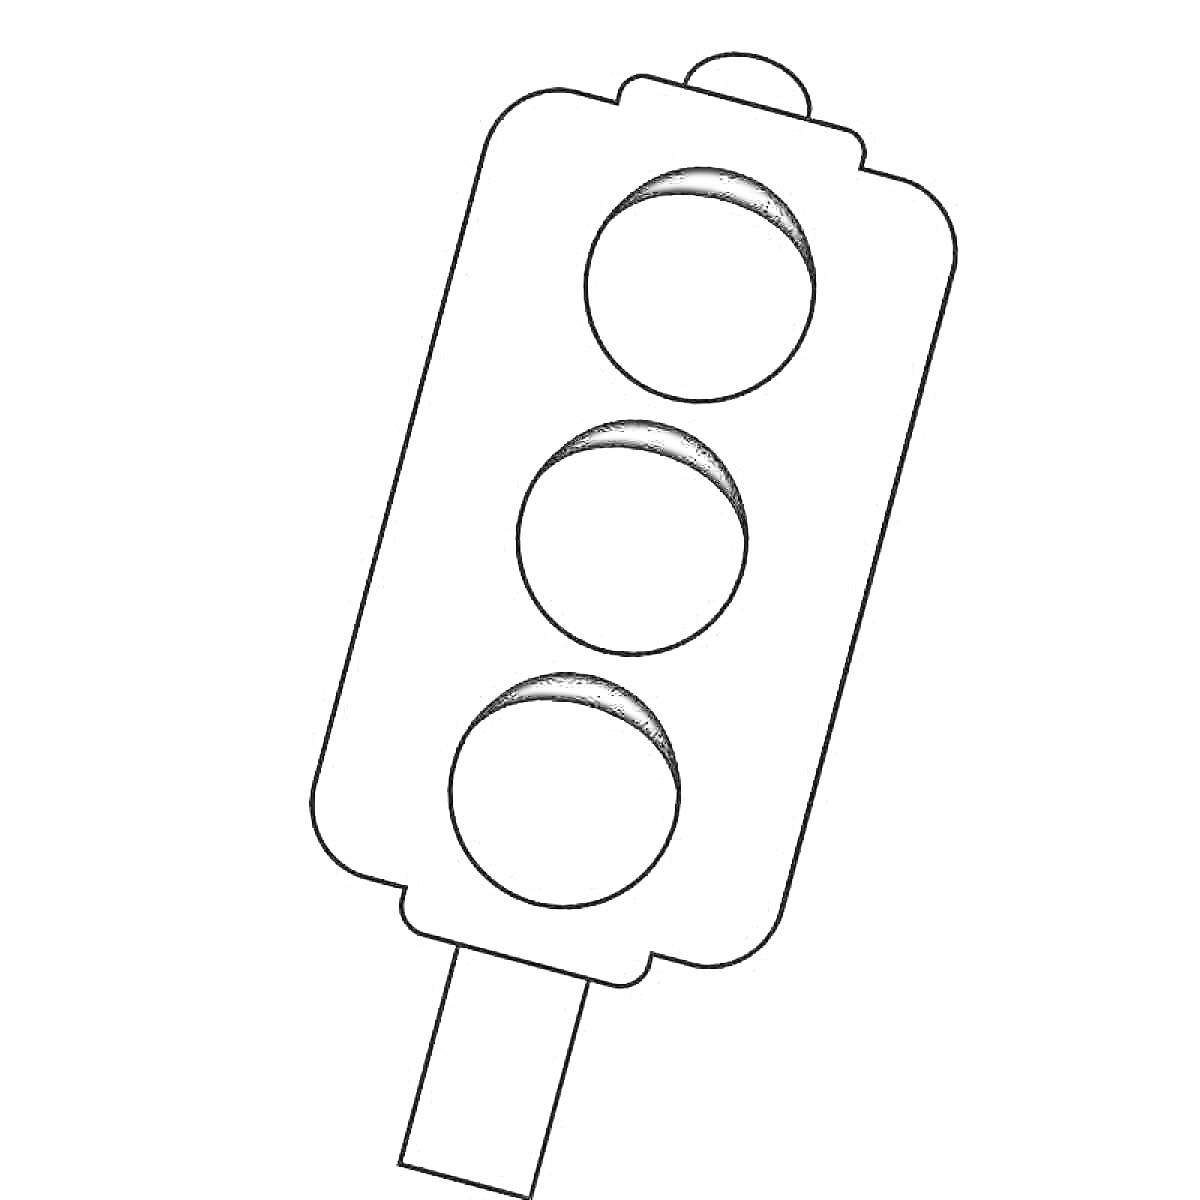 Раскраска с изображением светофора с тремя круглыми сигналами